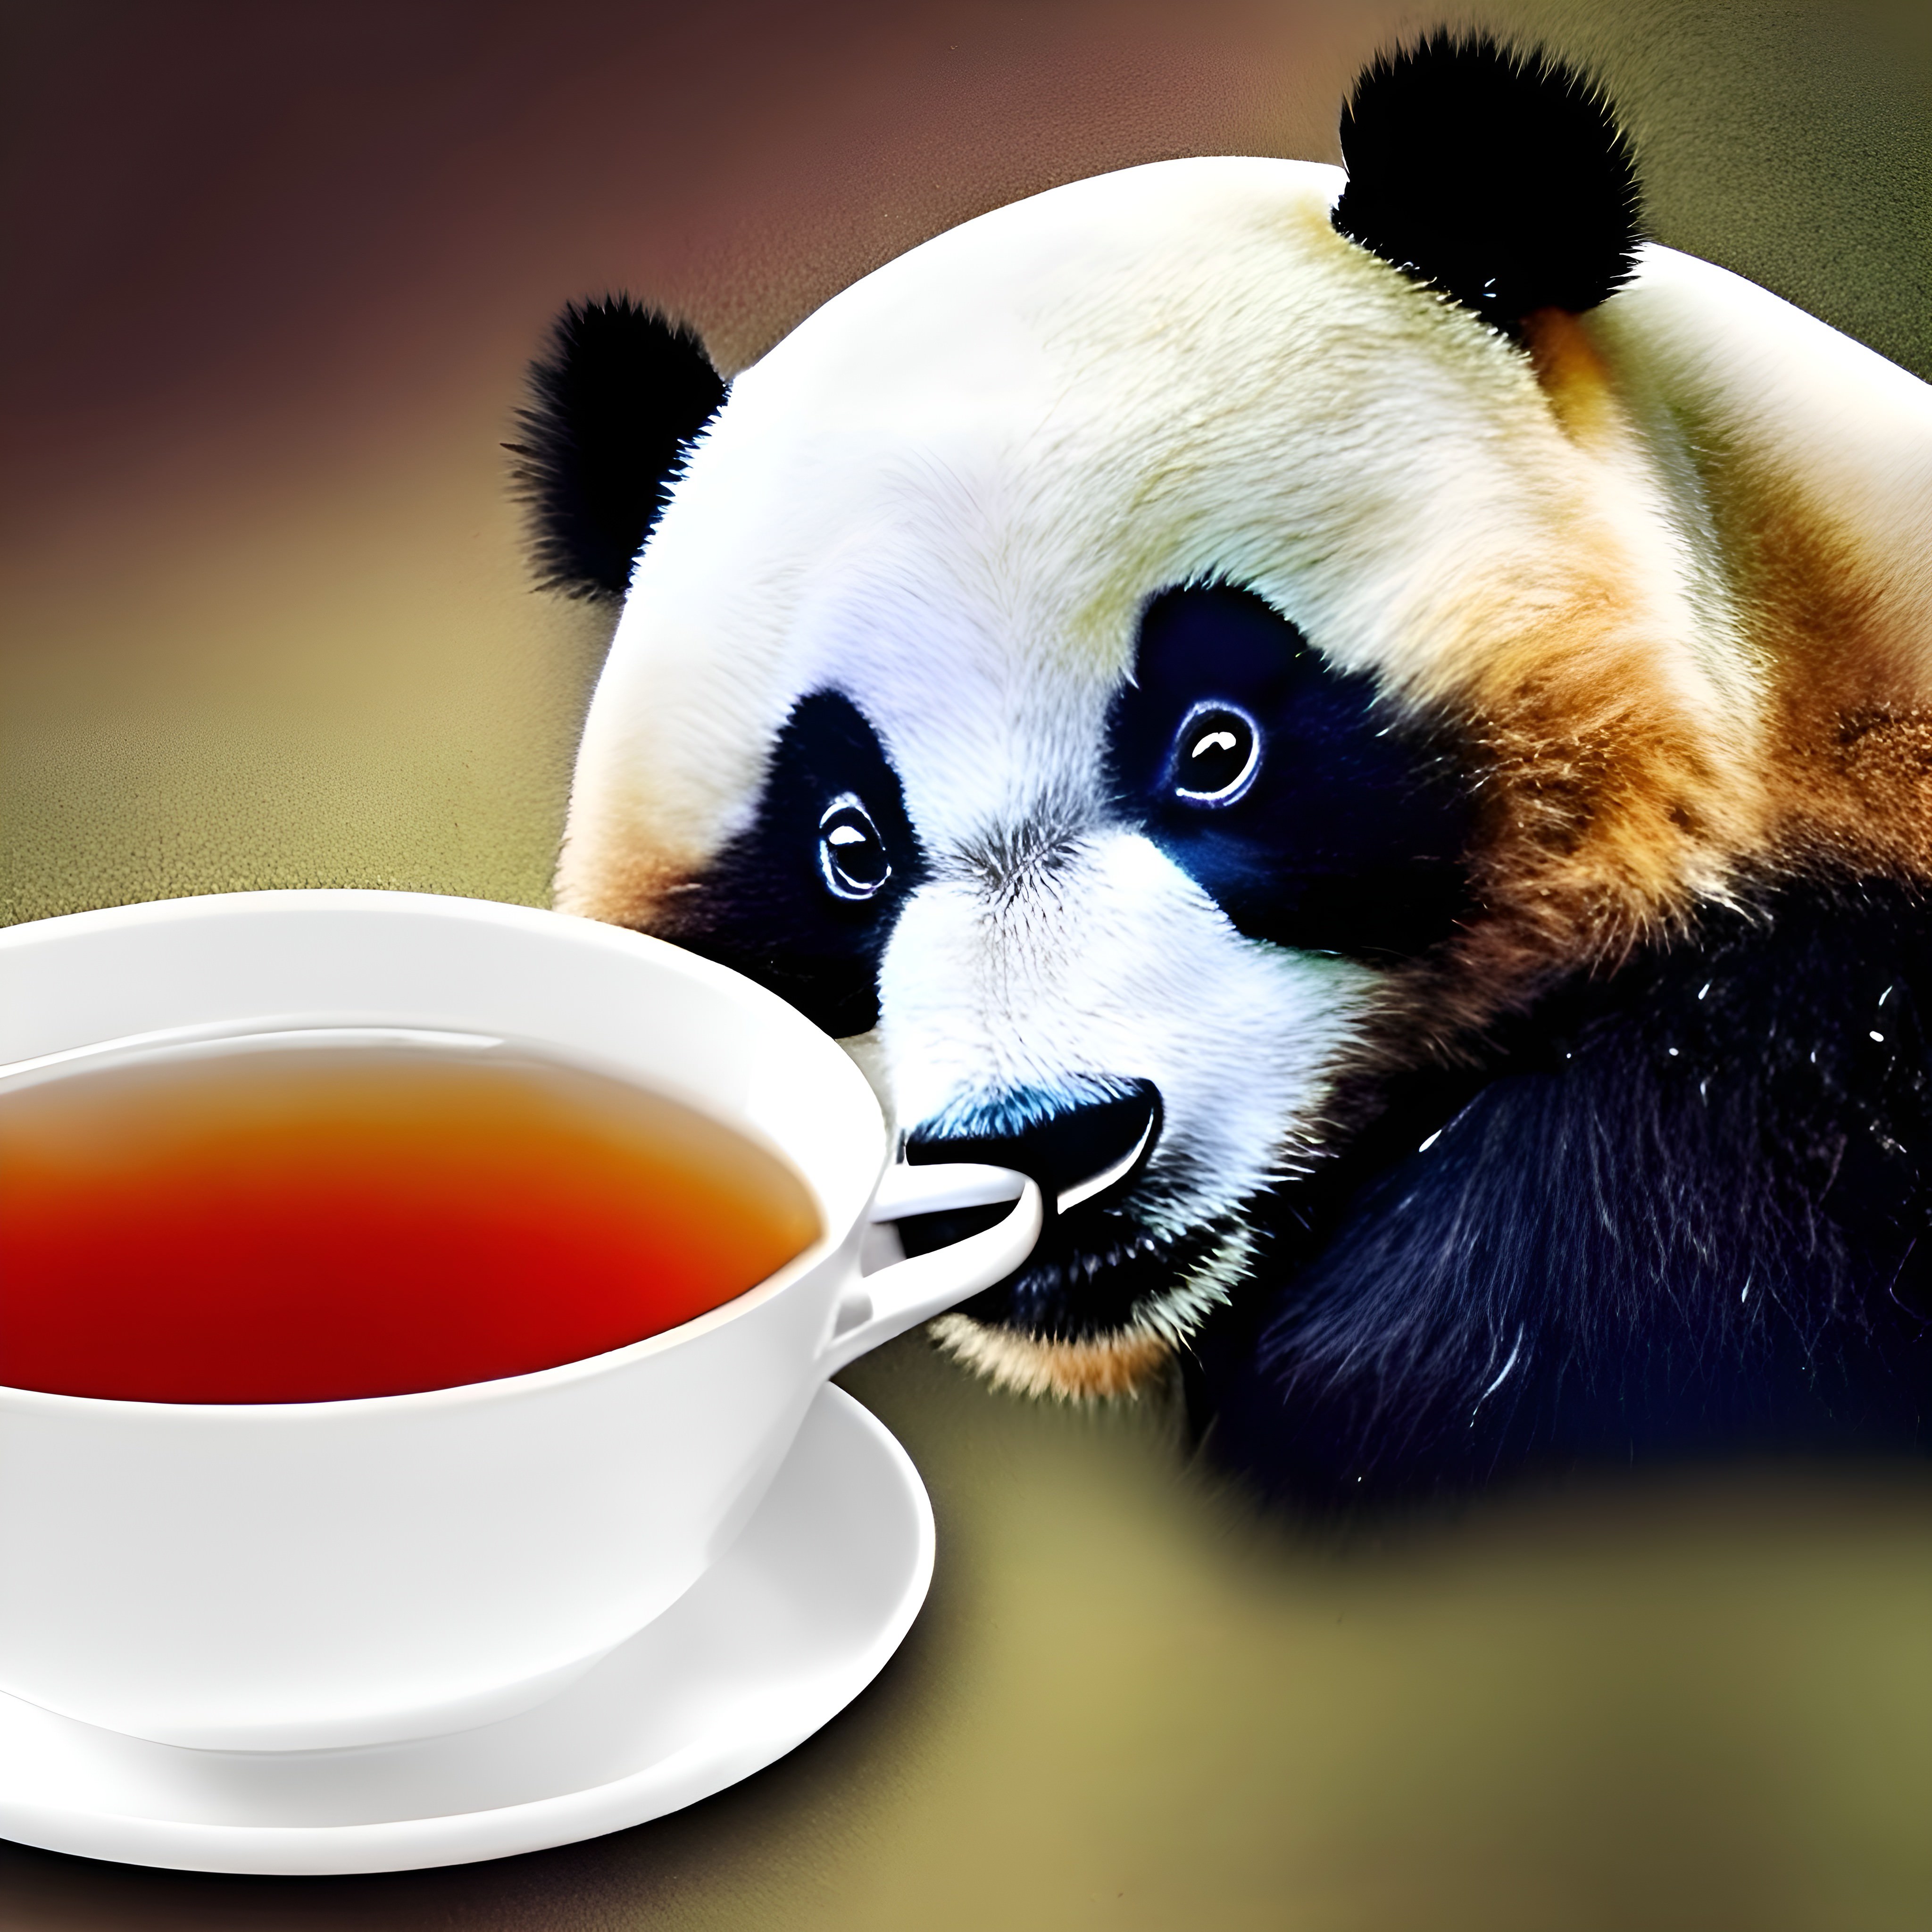 a panda looking at an unusual tea made from panda dung